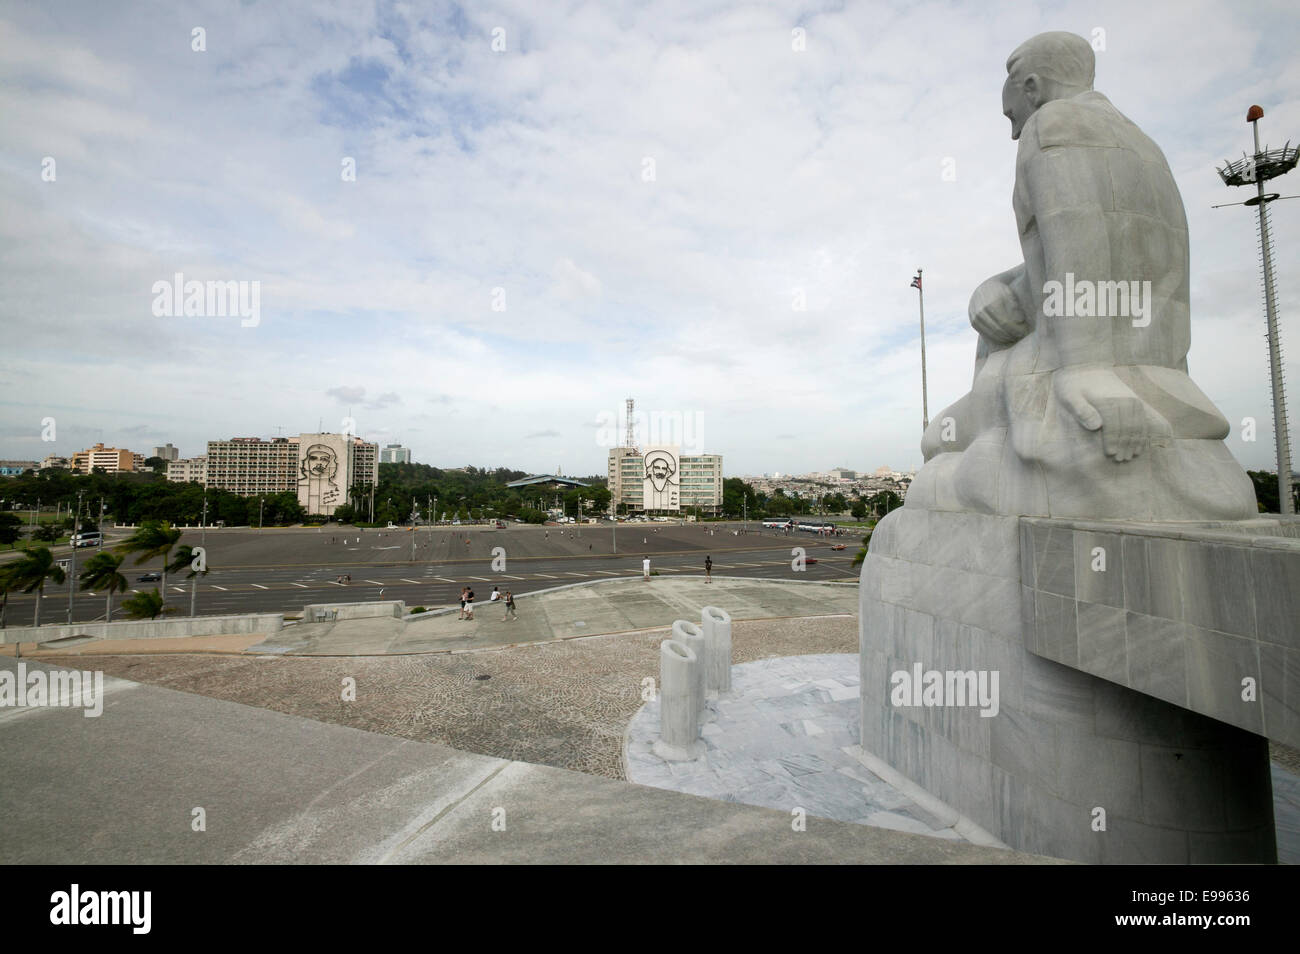 View of Plaza de la Revolution seen from the Jose Marti Monument, Havana Cuba. Stock Photo